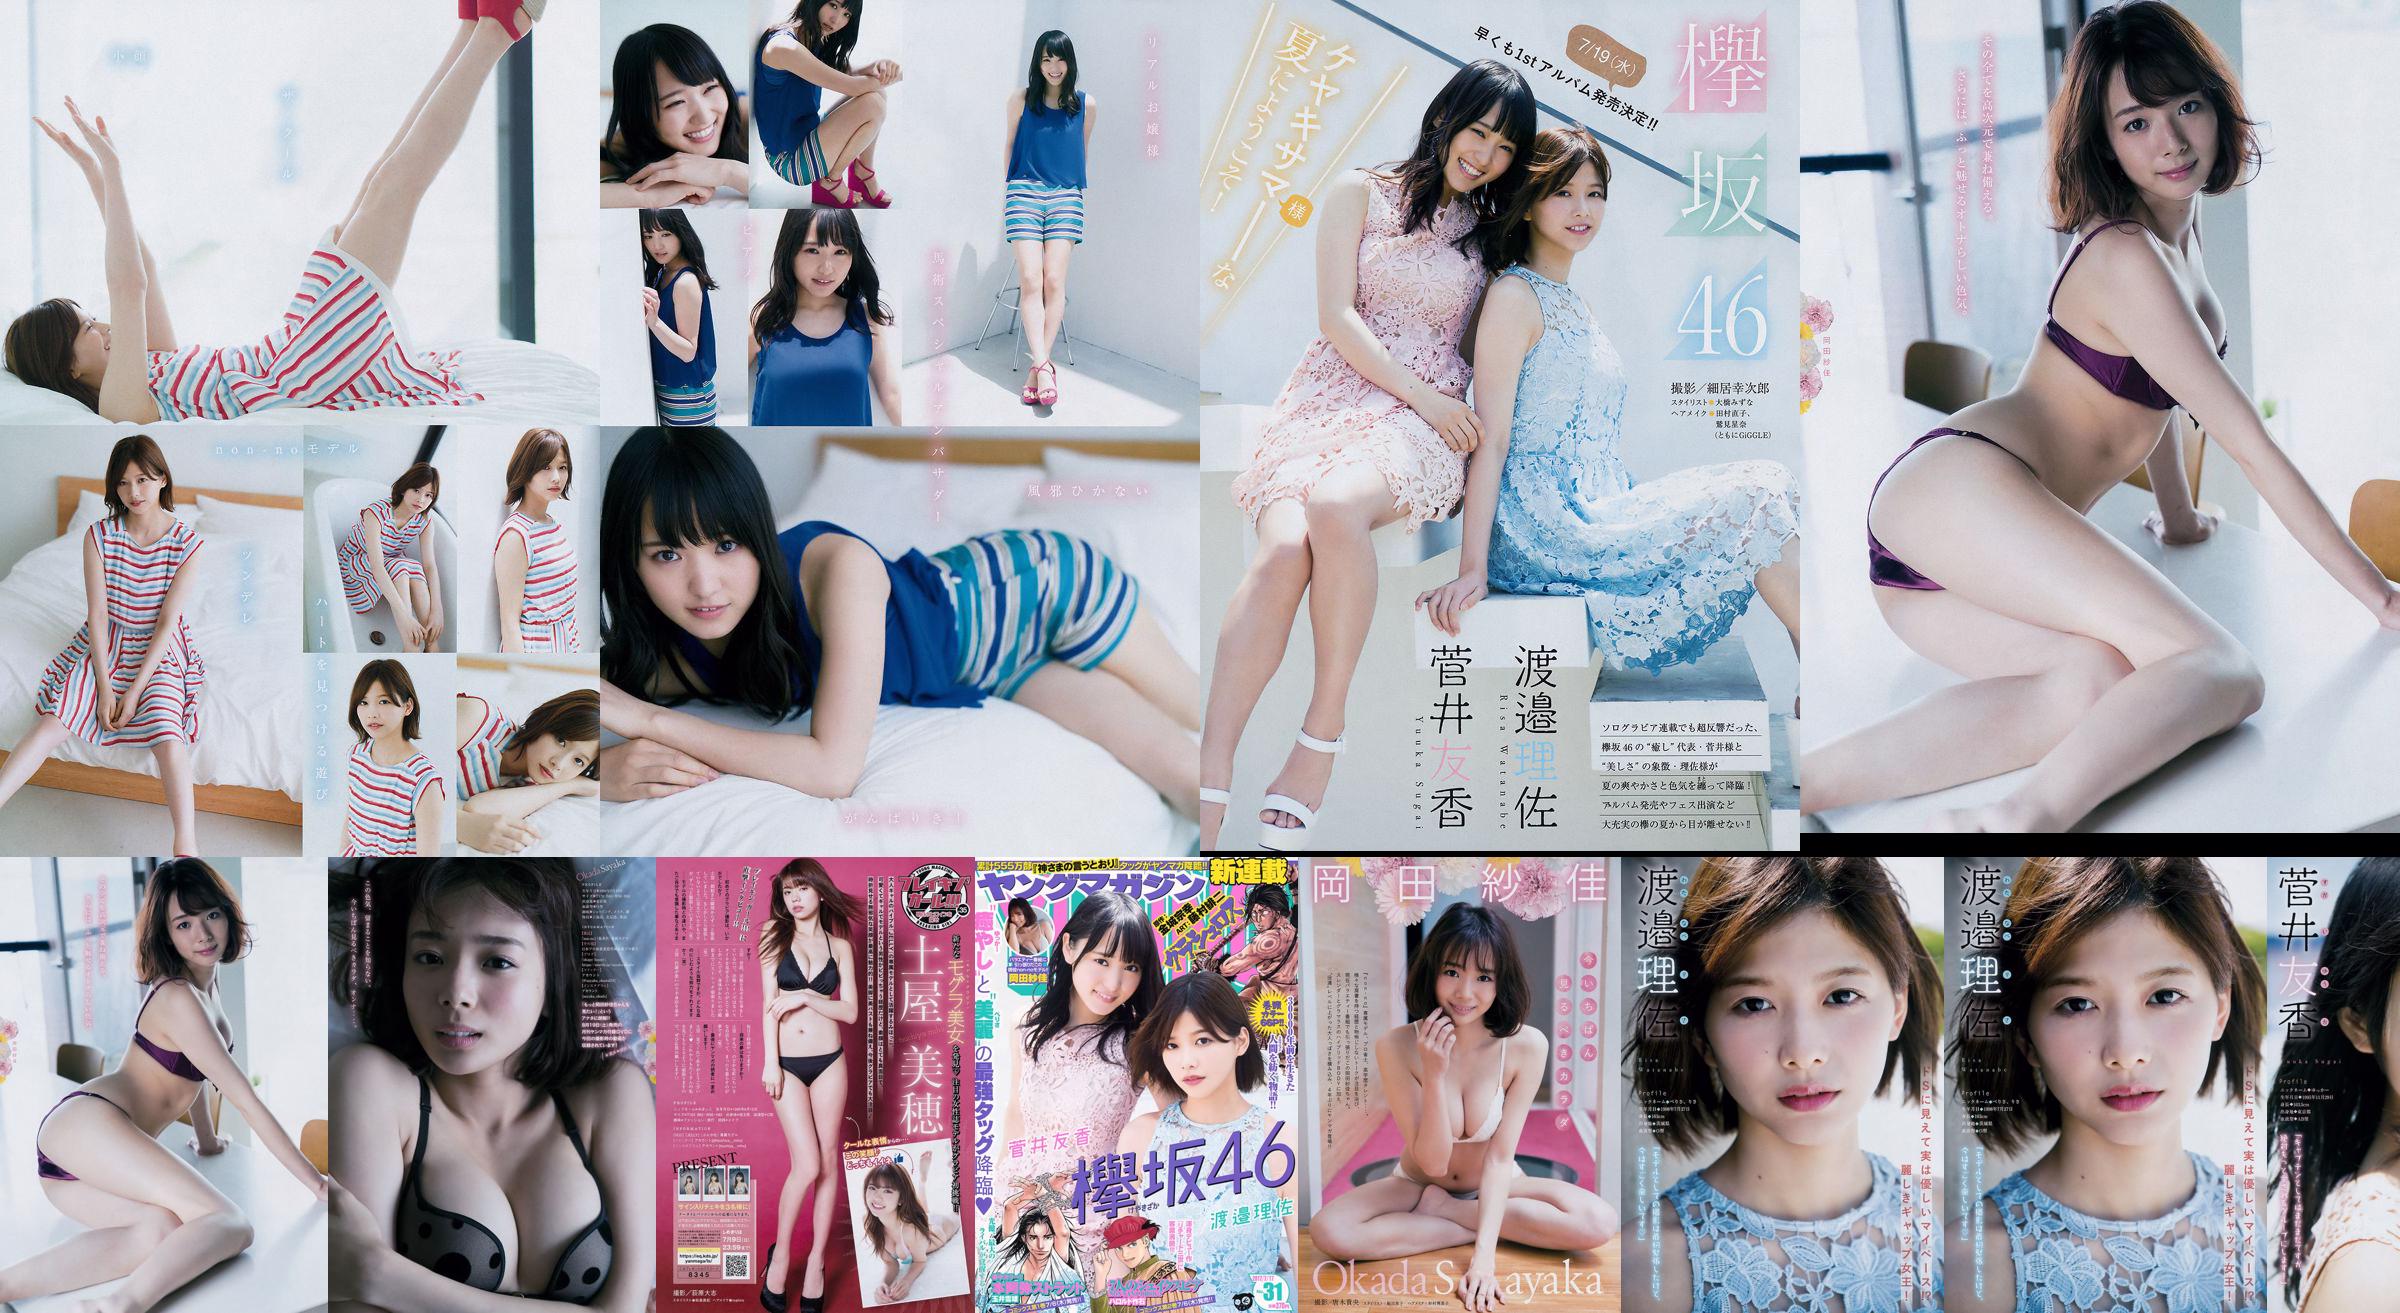 [Junges Magazin] Watanabe Risa, Sugai Yuka, Okada Saika 2017 Nr. 31 Fotomagazin No.7df18c Seite 1